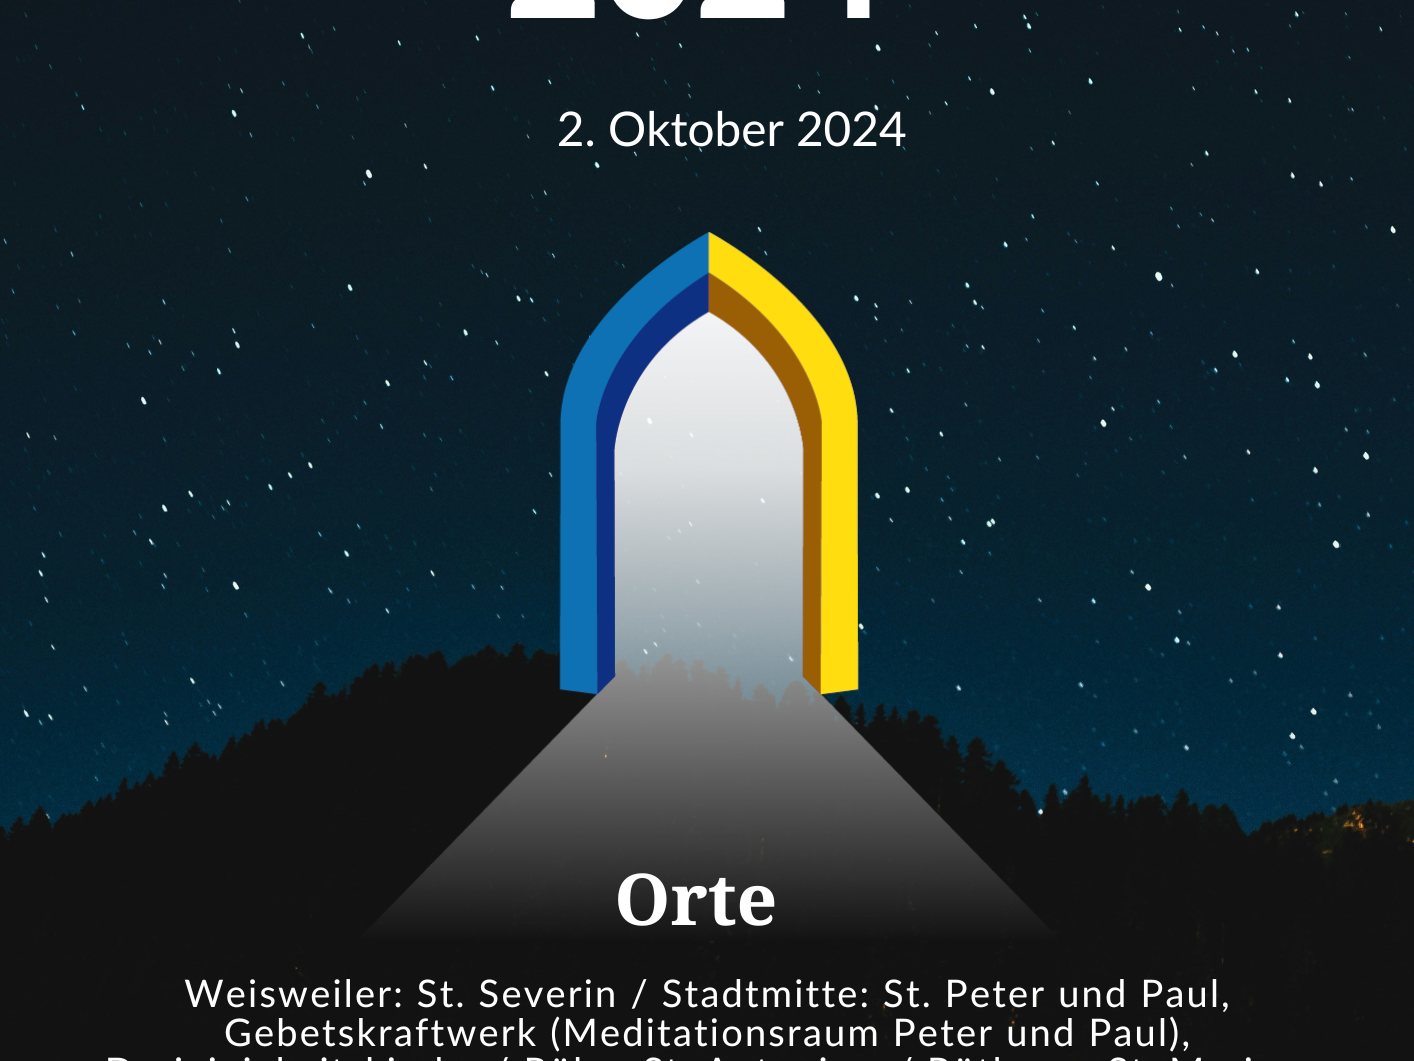 Nacht der offenen Kirchen am 2. Oktober 2024